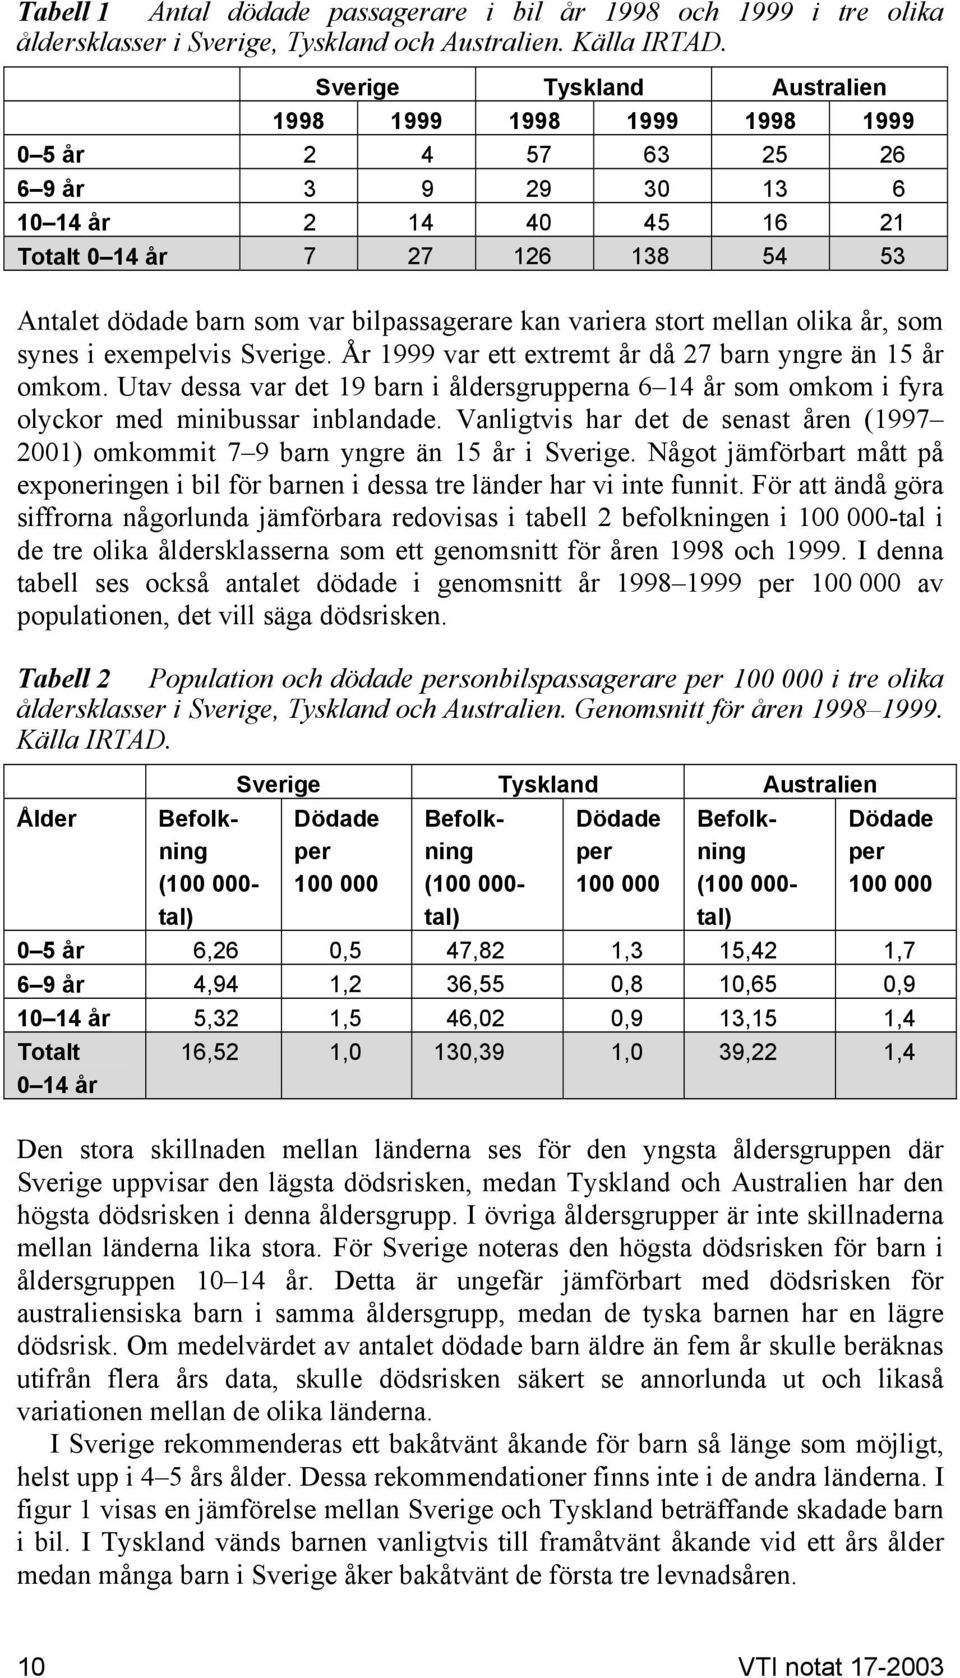 bilpassagerare kan variera stort mellan olika år, som synes i exempelvis Sverige. År 1999 var ett extremt år då 27 barn yngre än 15 år omkom.